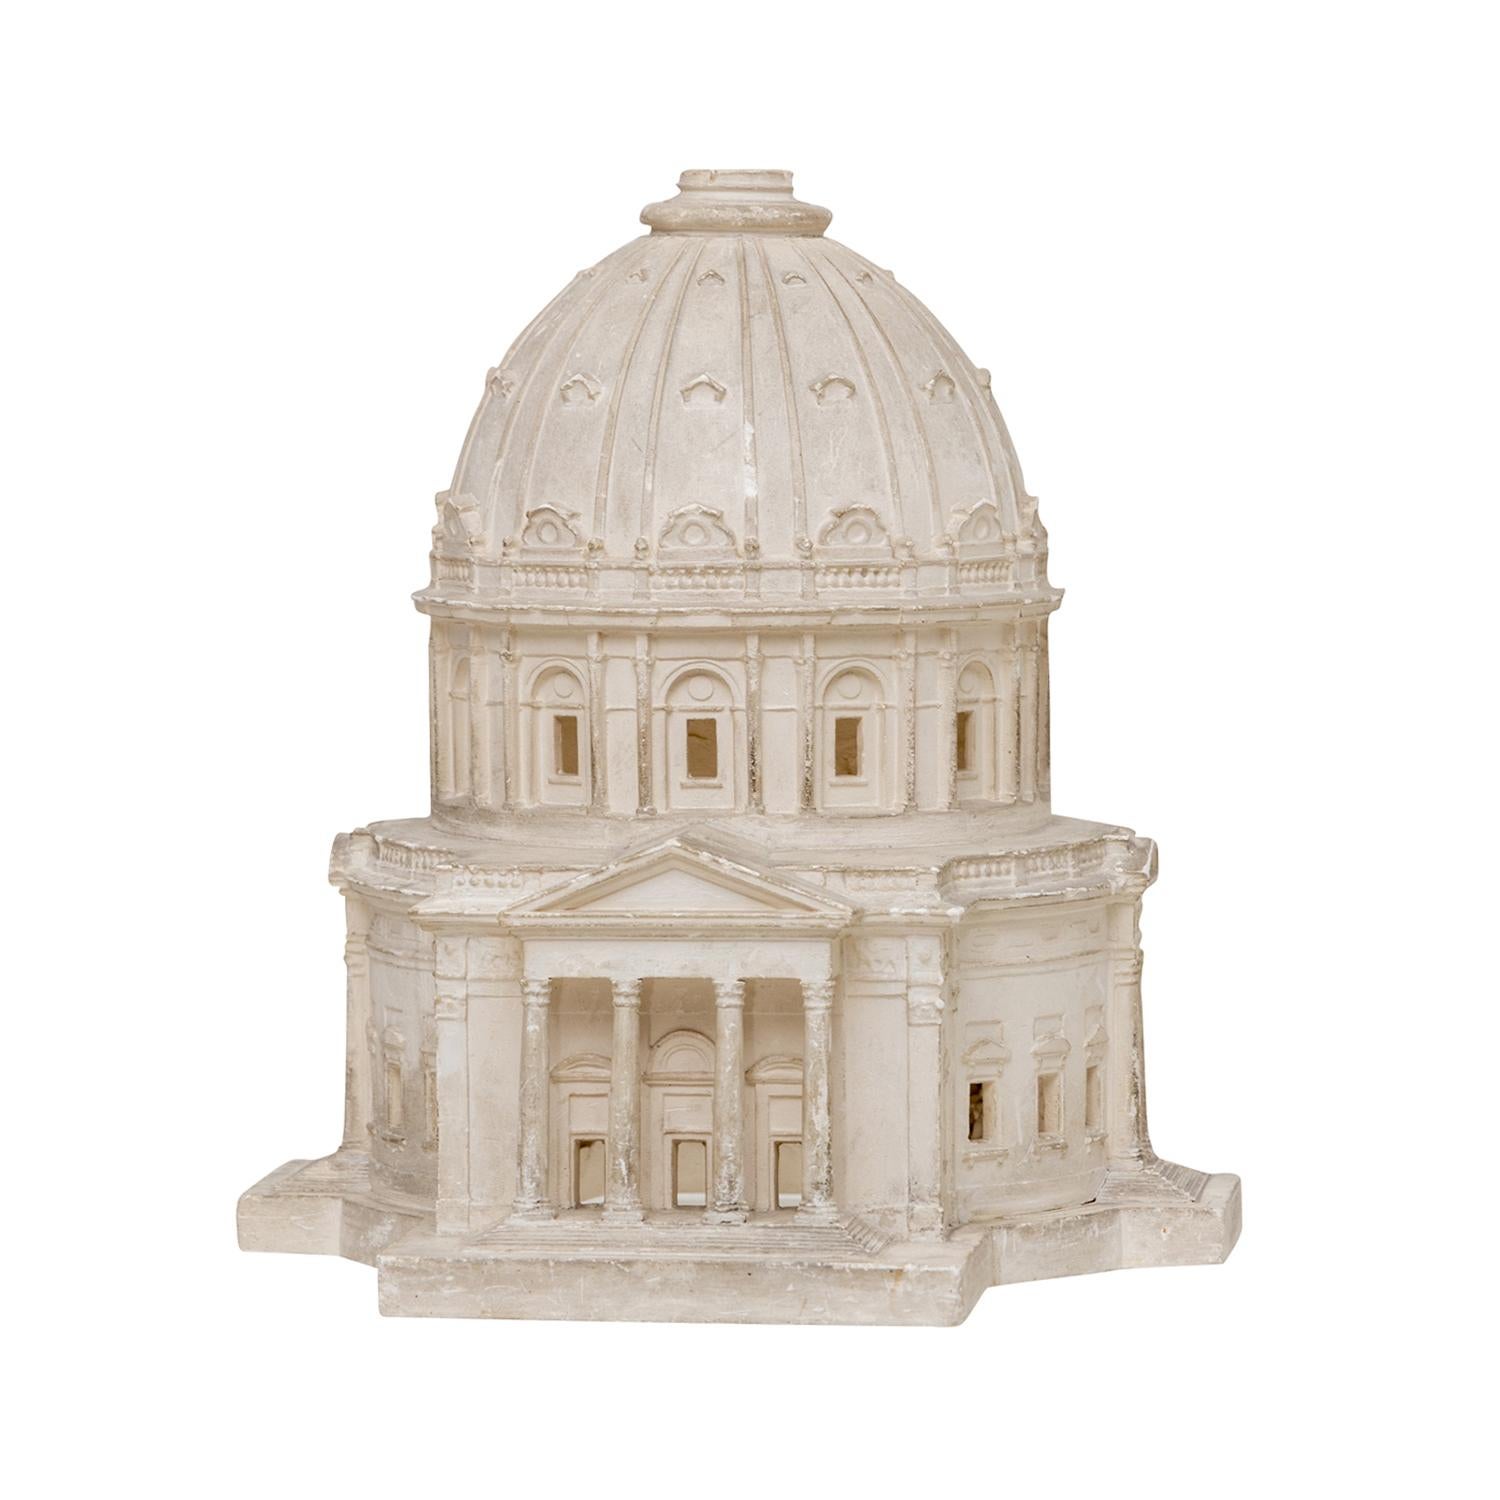 Ein weißes, antikes belgisches Architekturmodell aus handgefertigtem Pariser Gips, in gutem Zustand. Es stellt die Frederik's Church in Kopenhagen, Dänemark, dar. Der Haupteingang der detailreichen Kathedrale ist über eine breite Treppe zugänglich,